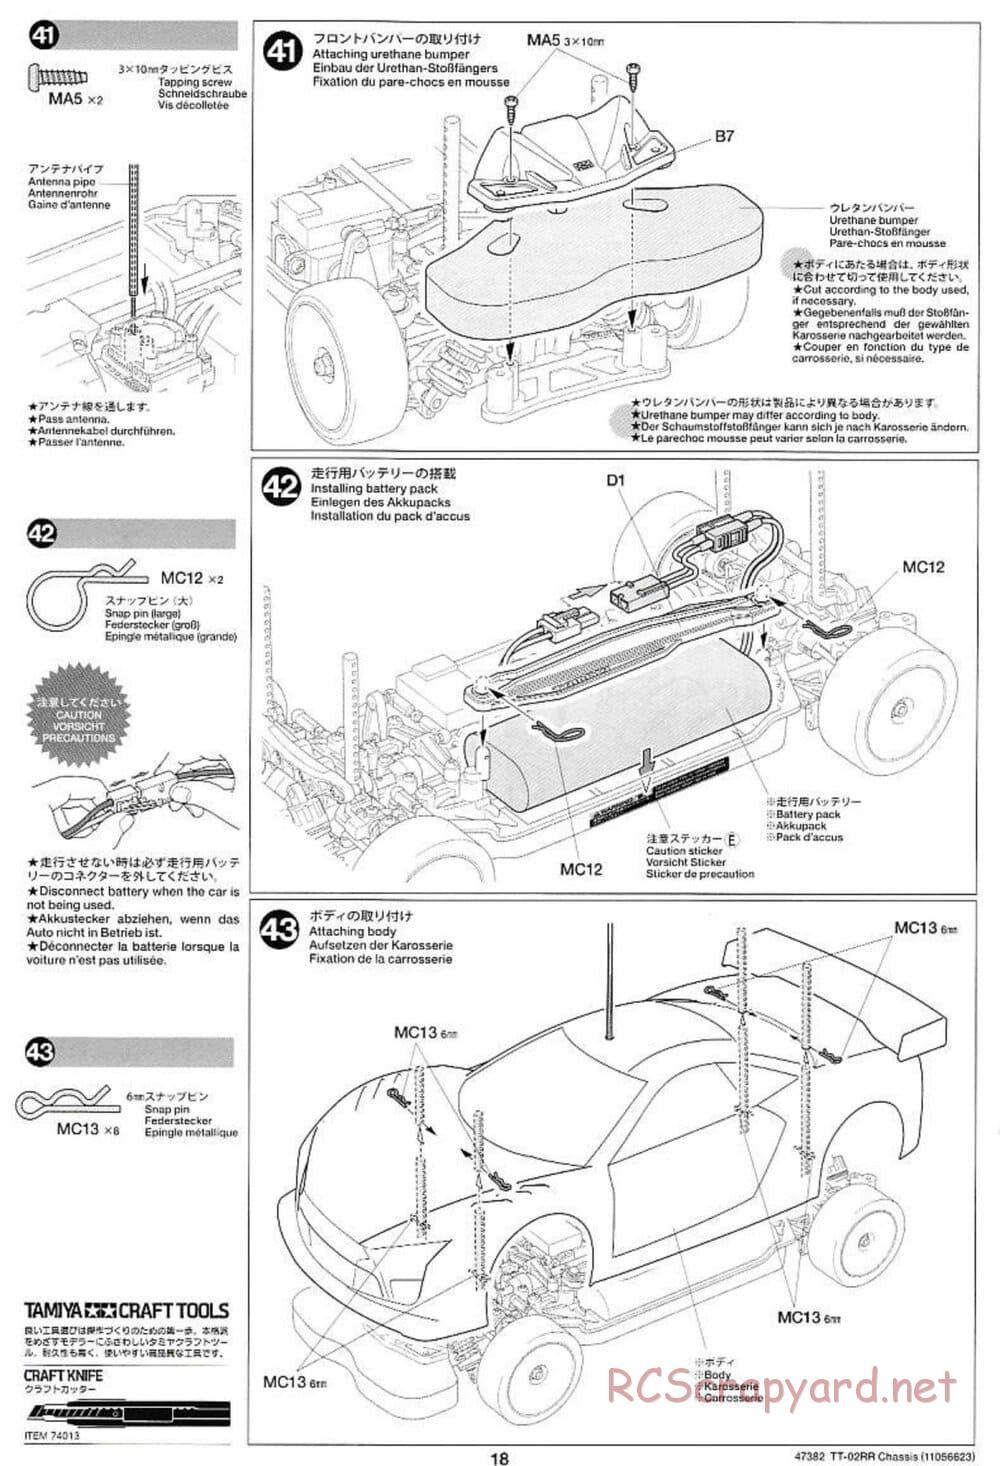 Tamiya - TT-02RR Chassis - Manual - Page 18